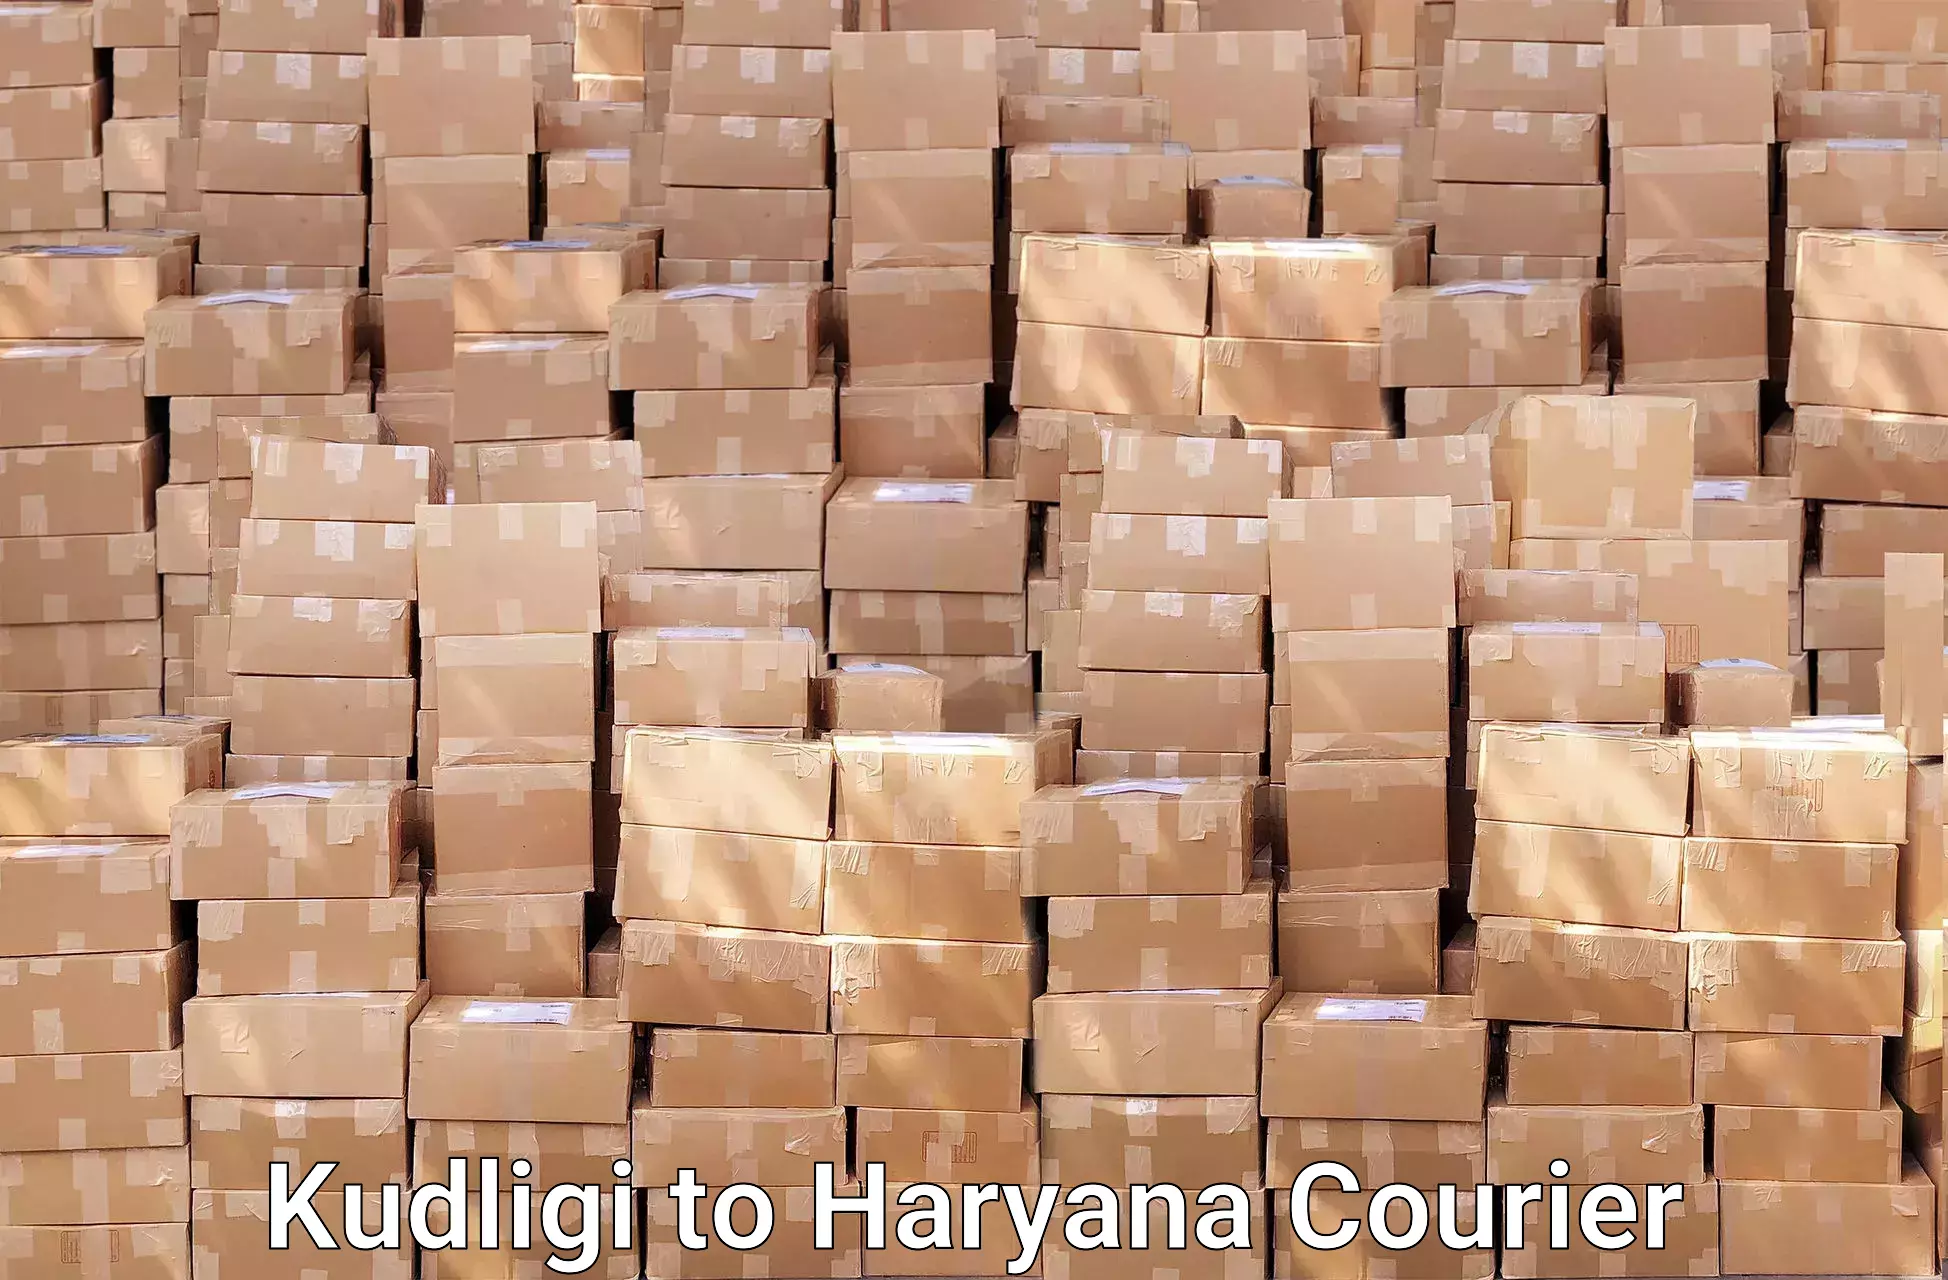 Professional moving assistance Kudligi to Haryana